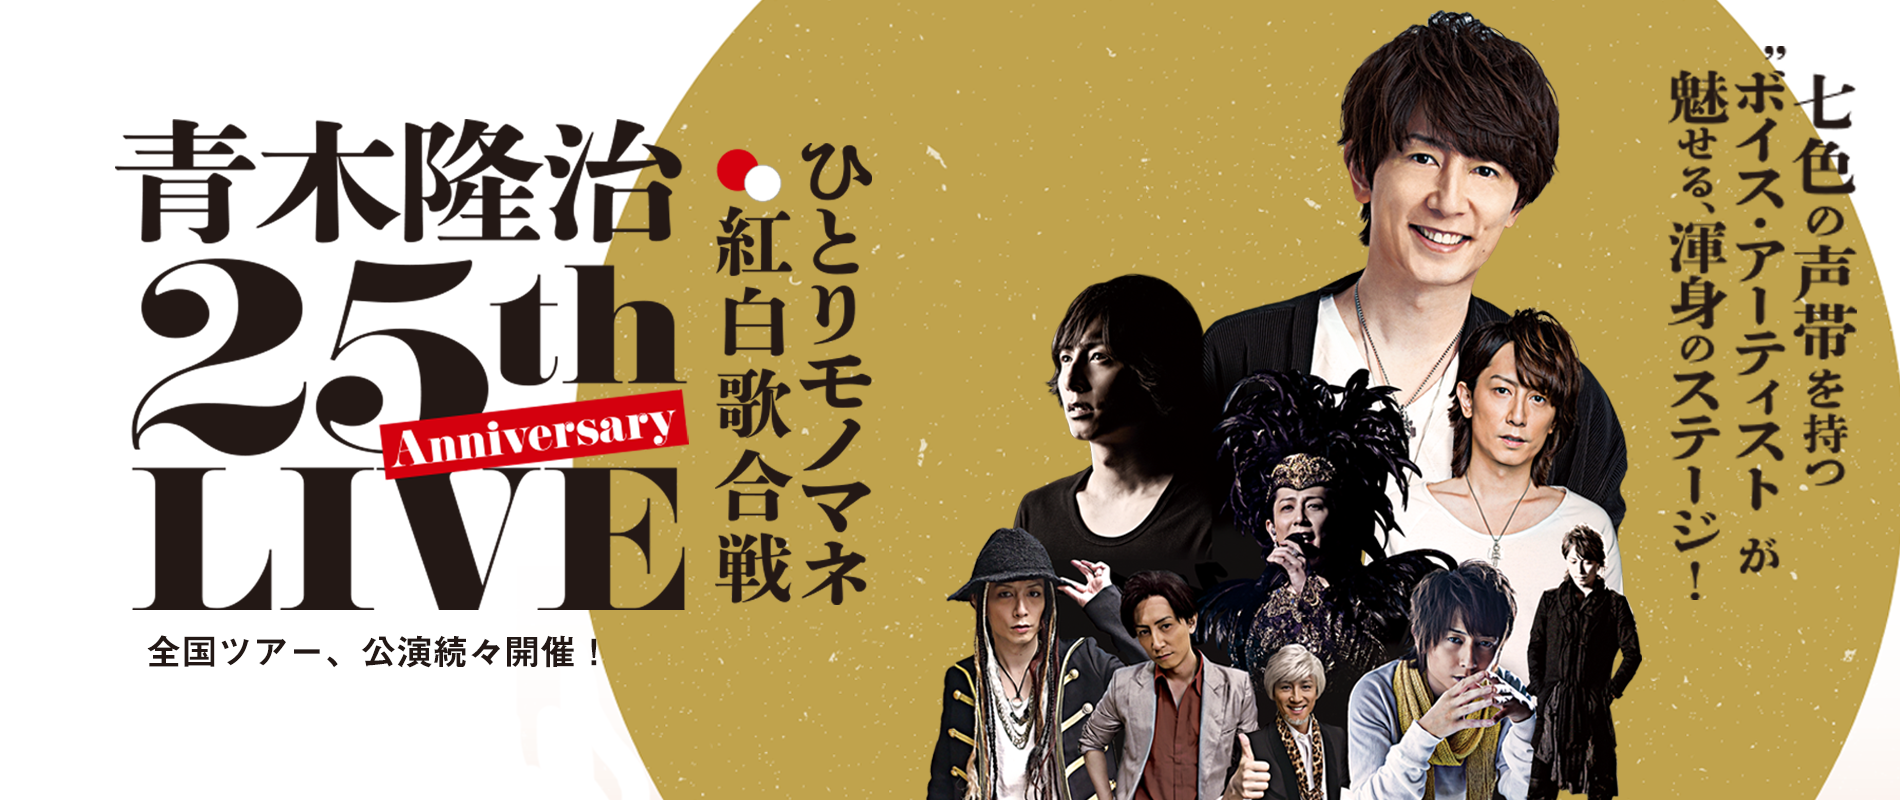 Ryuji Aoki / Face Official Site | Ryuji Aoki / Face Official Site